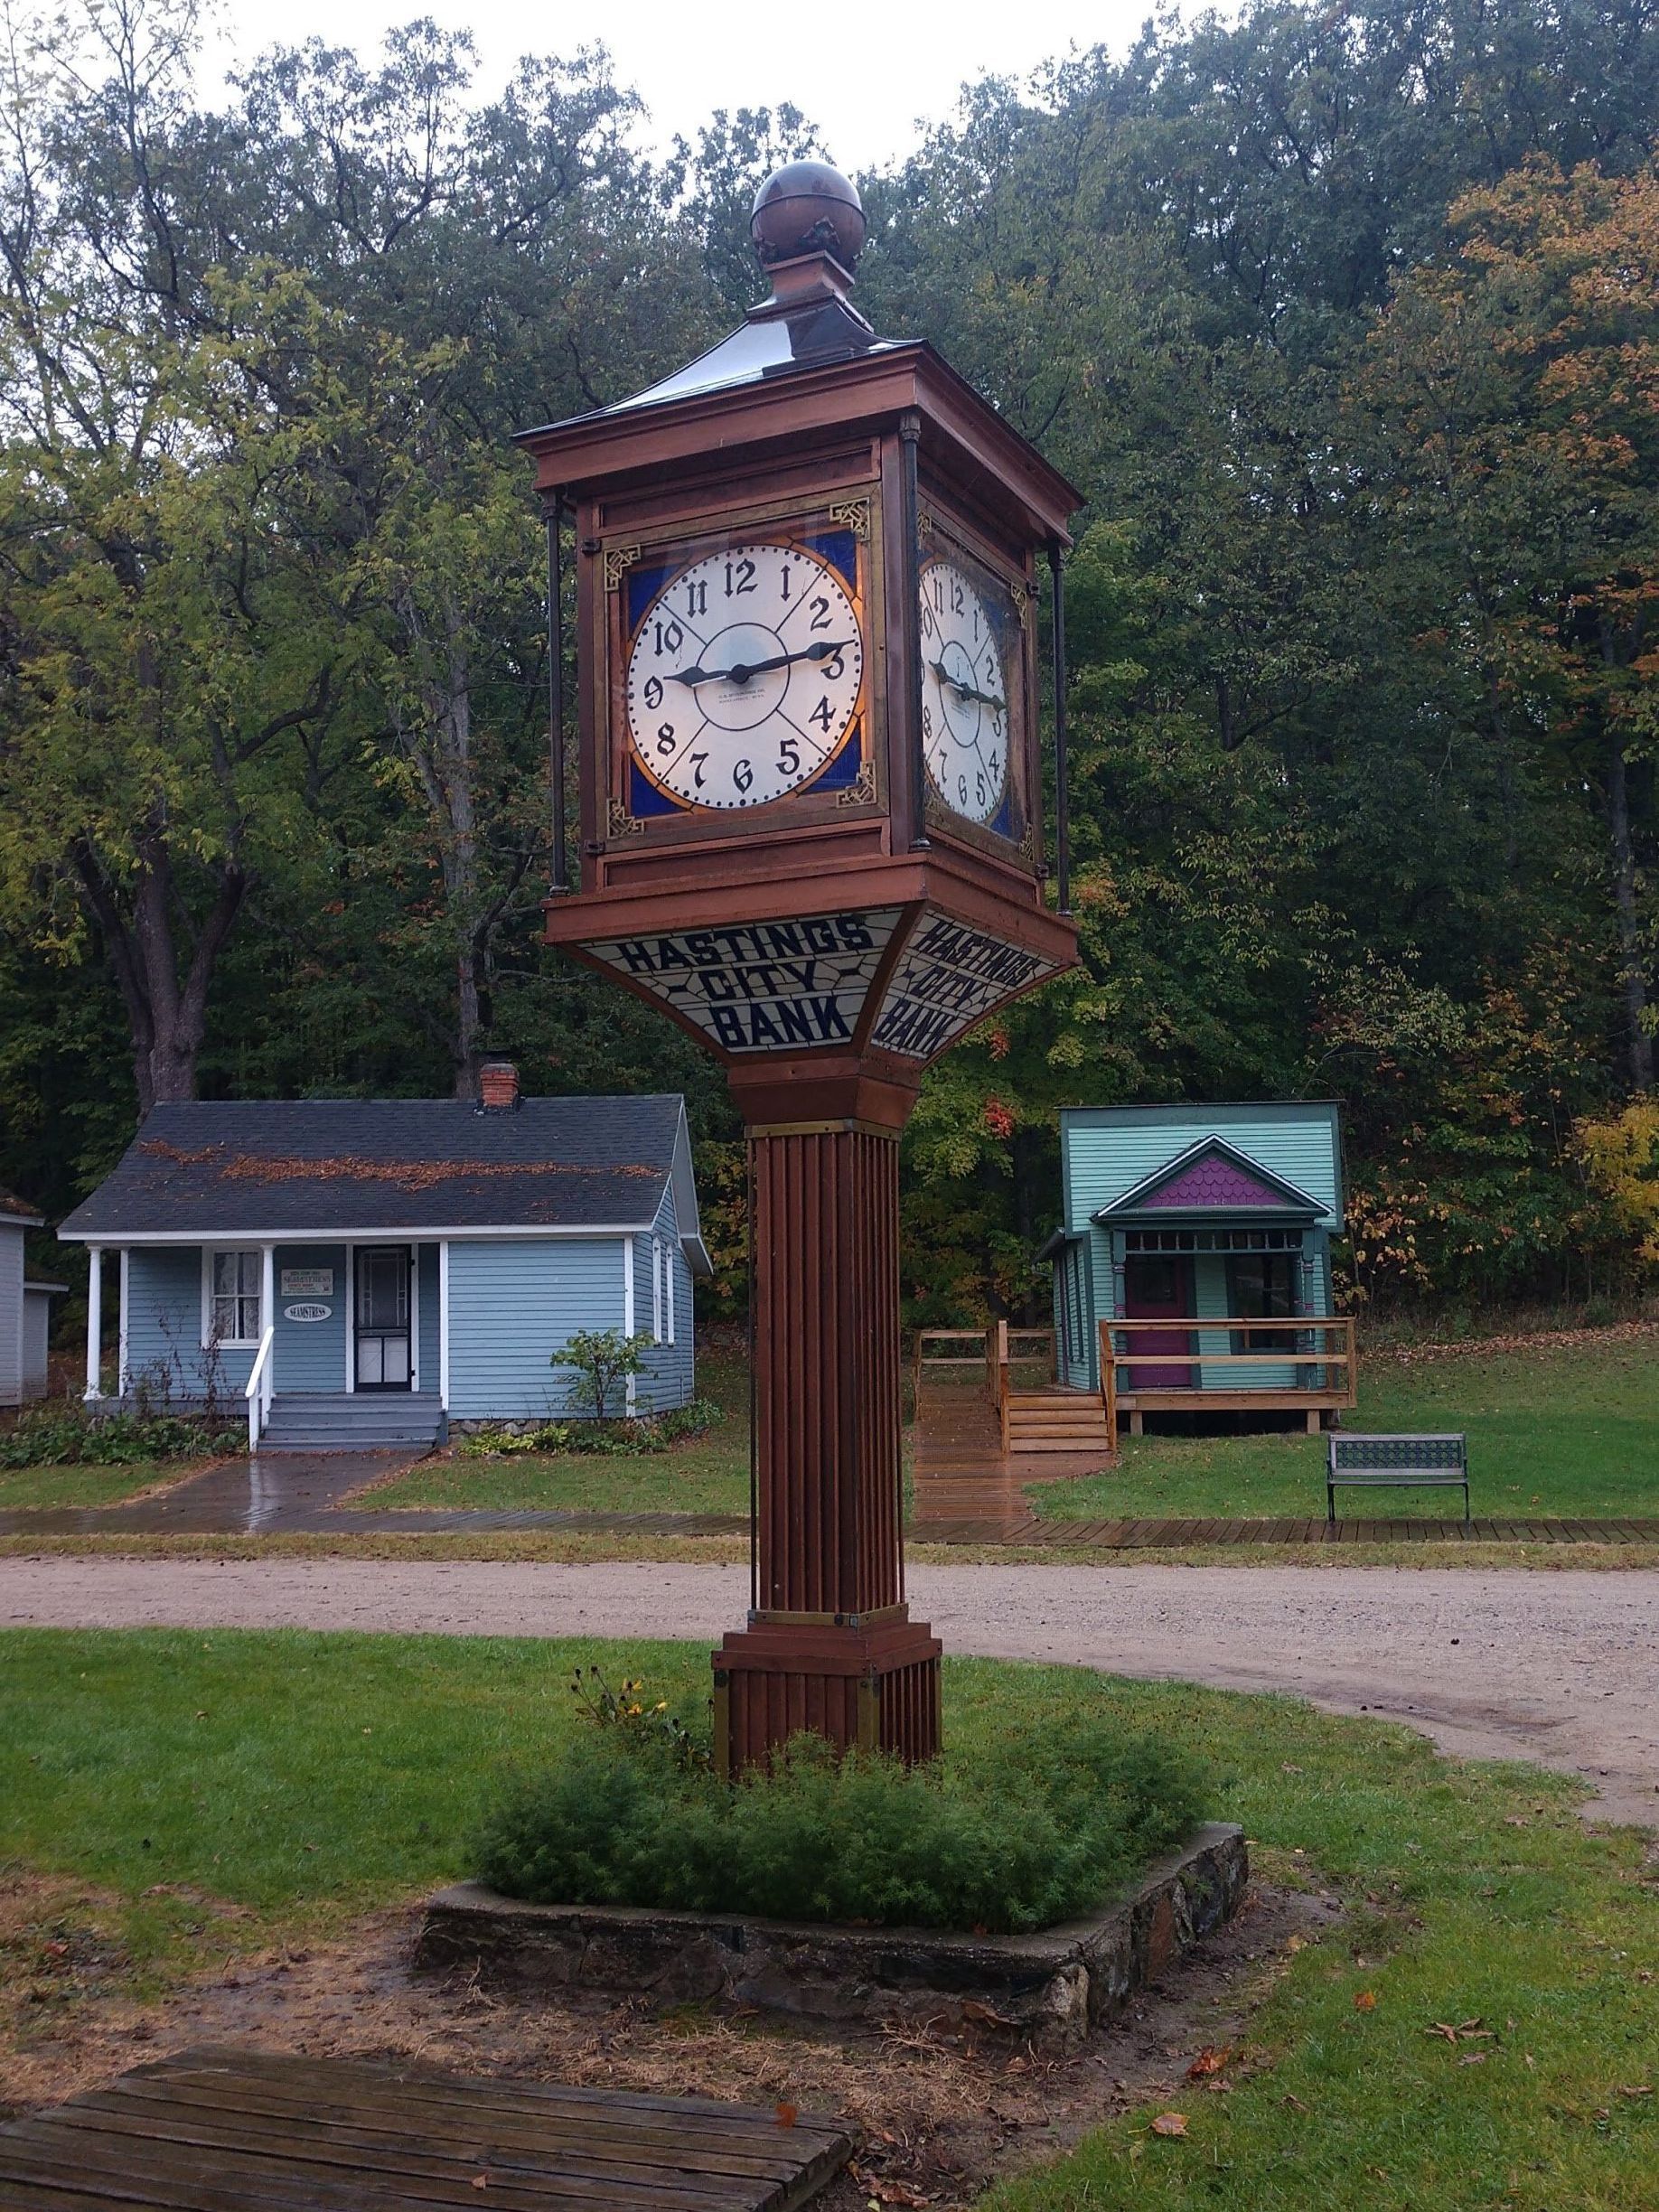 Hastings City Bank Clock